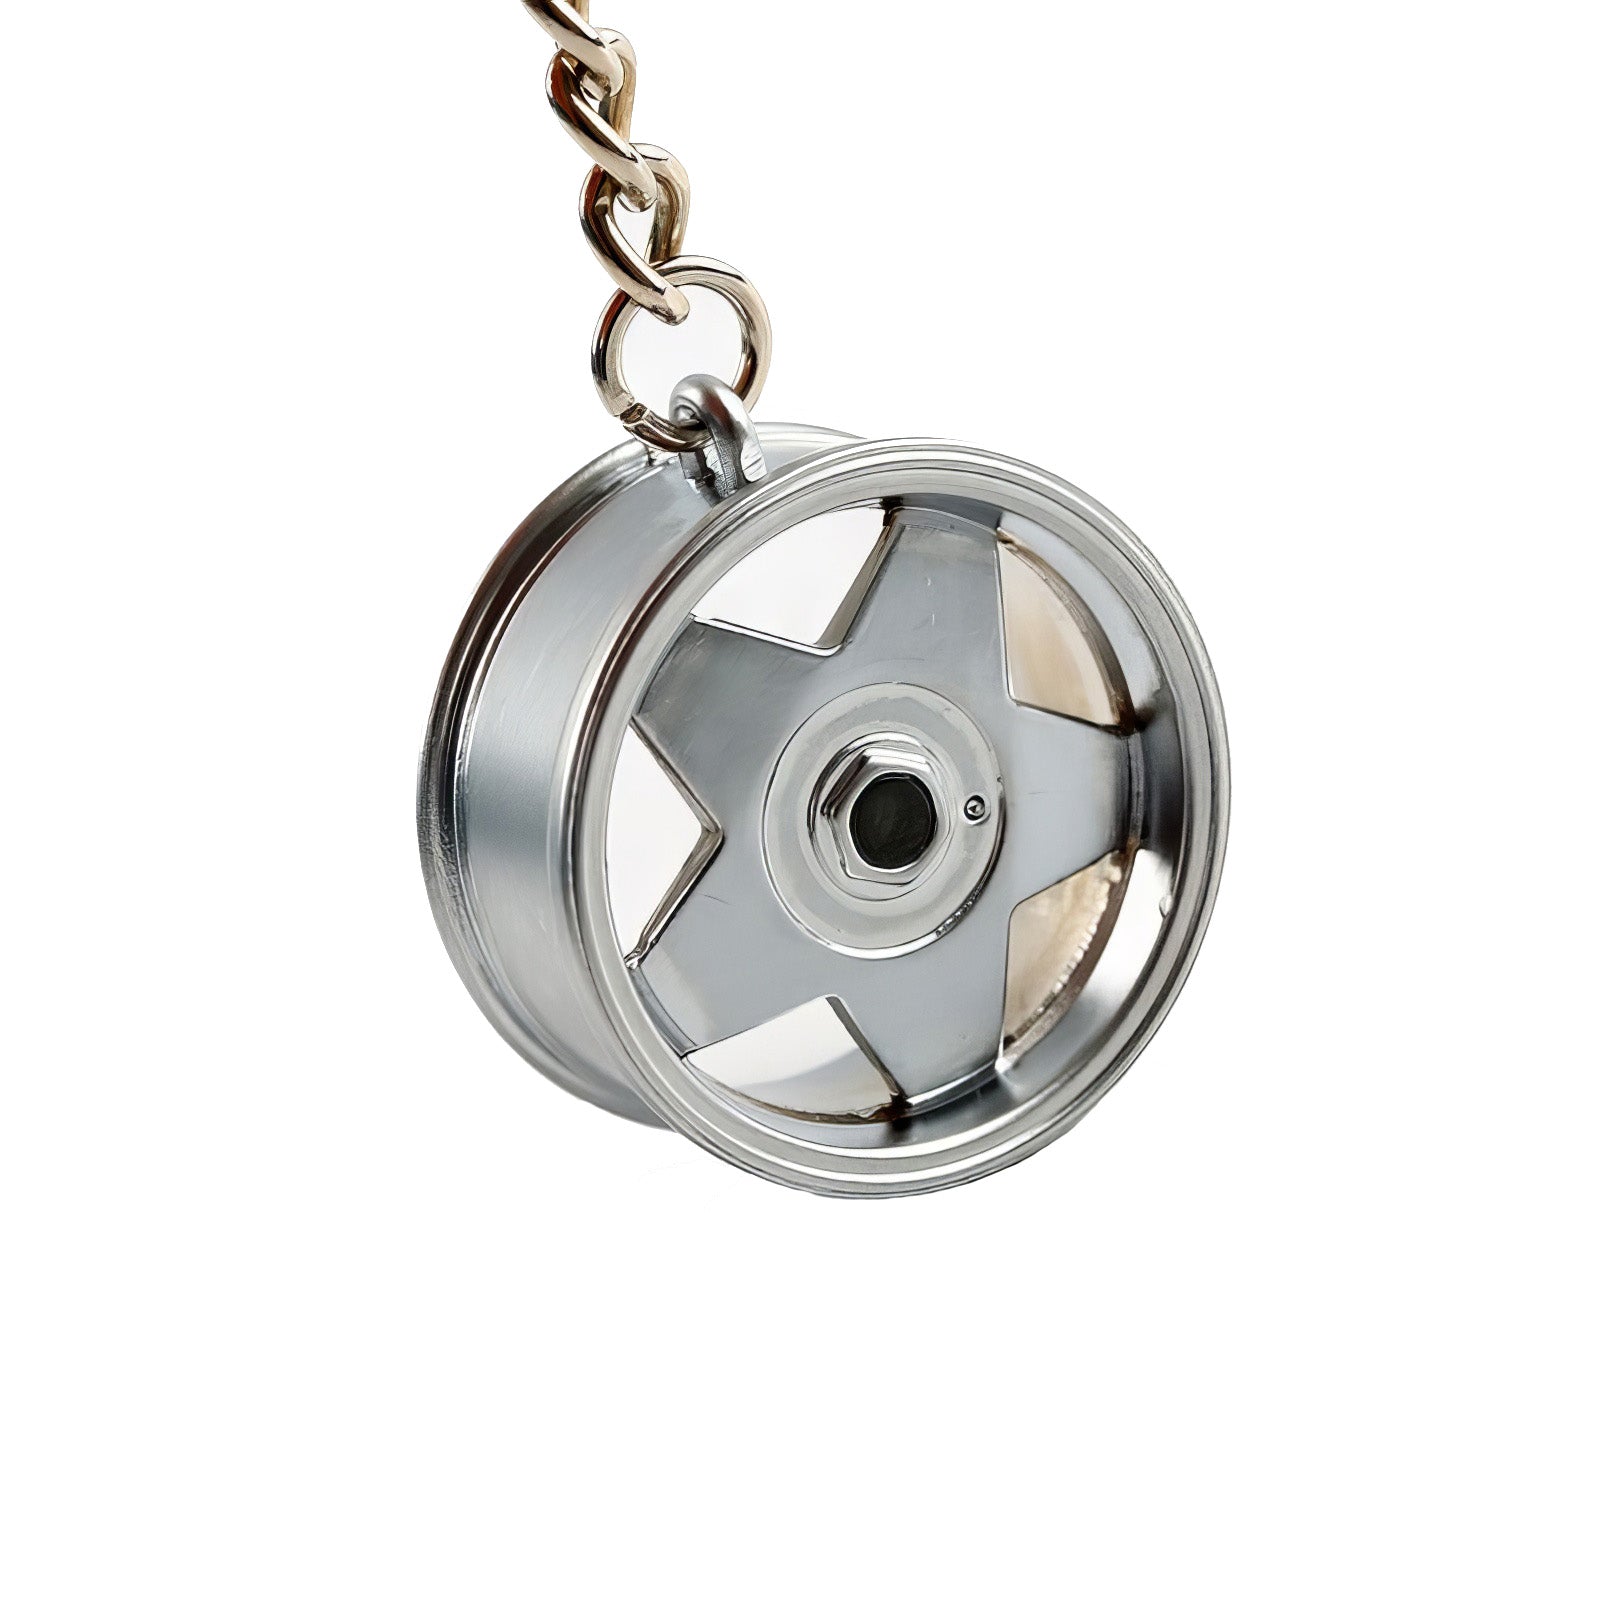 TunerLifestyle Wheel with Disc Brake Keychain Gold